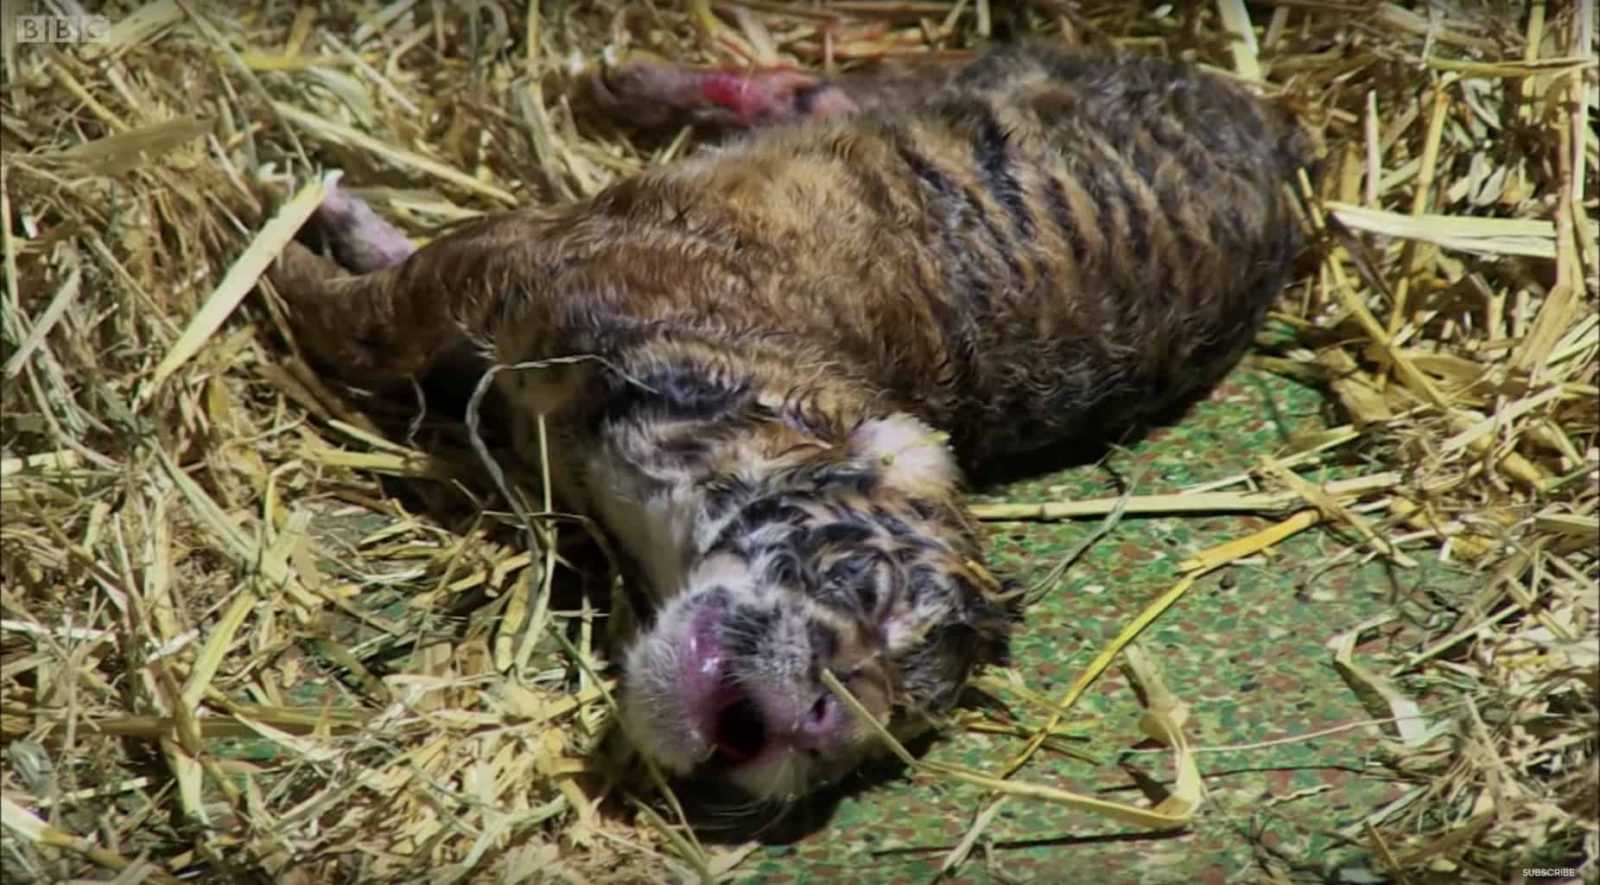 Tigre da a luz a un cachorro sin vida, luego los cuidadores observan con asombro cómo los instintos de la madre se activan